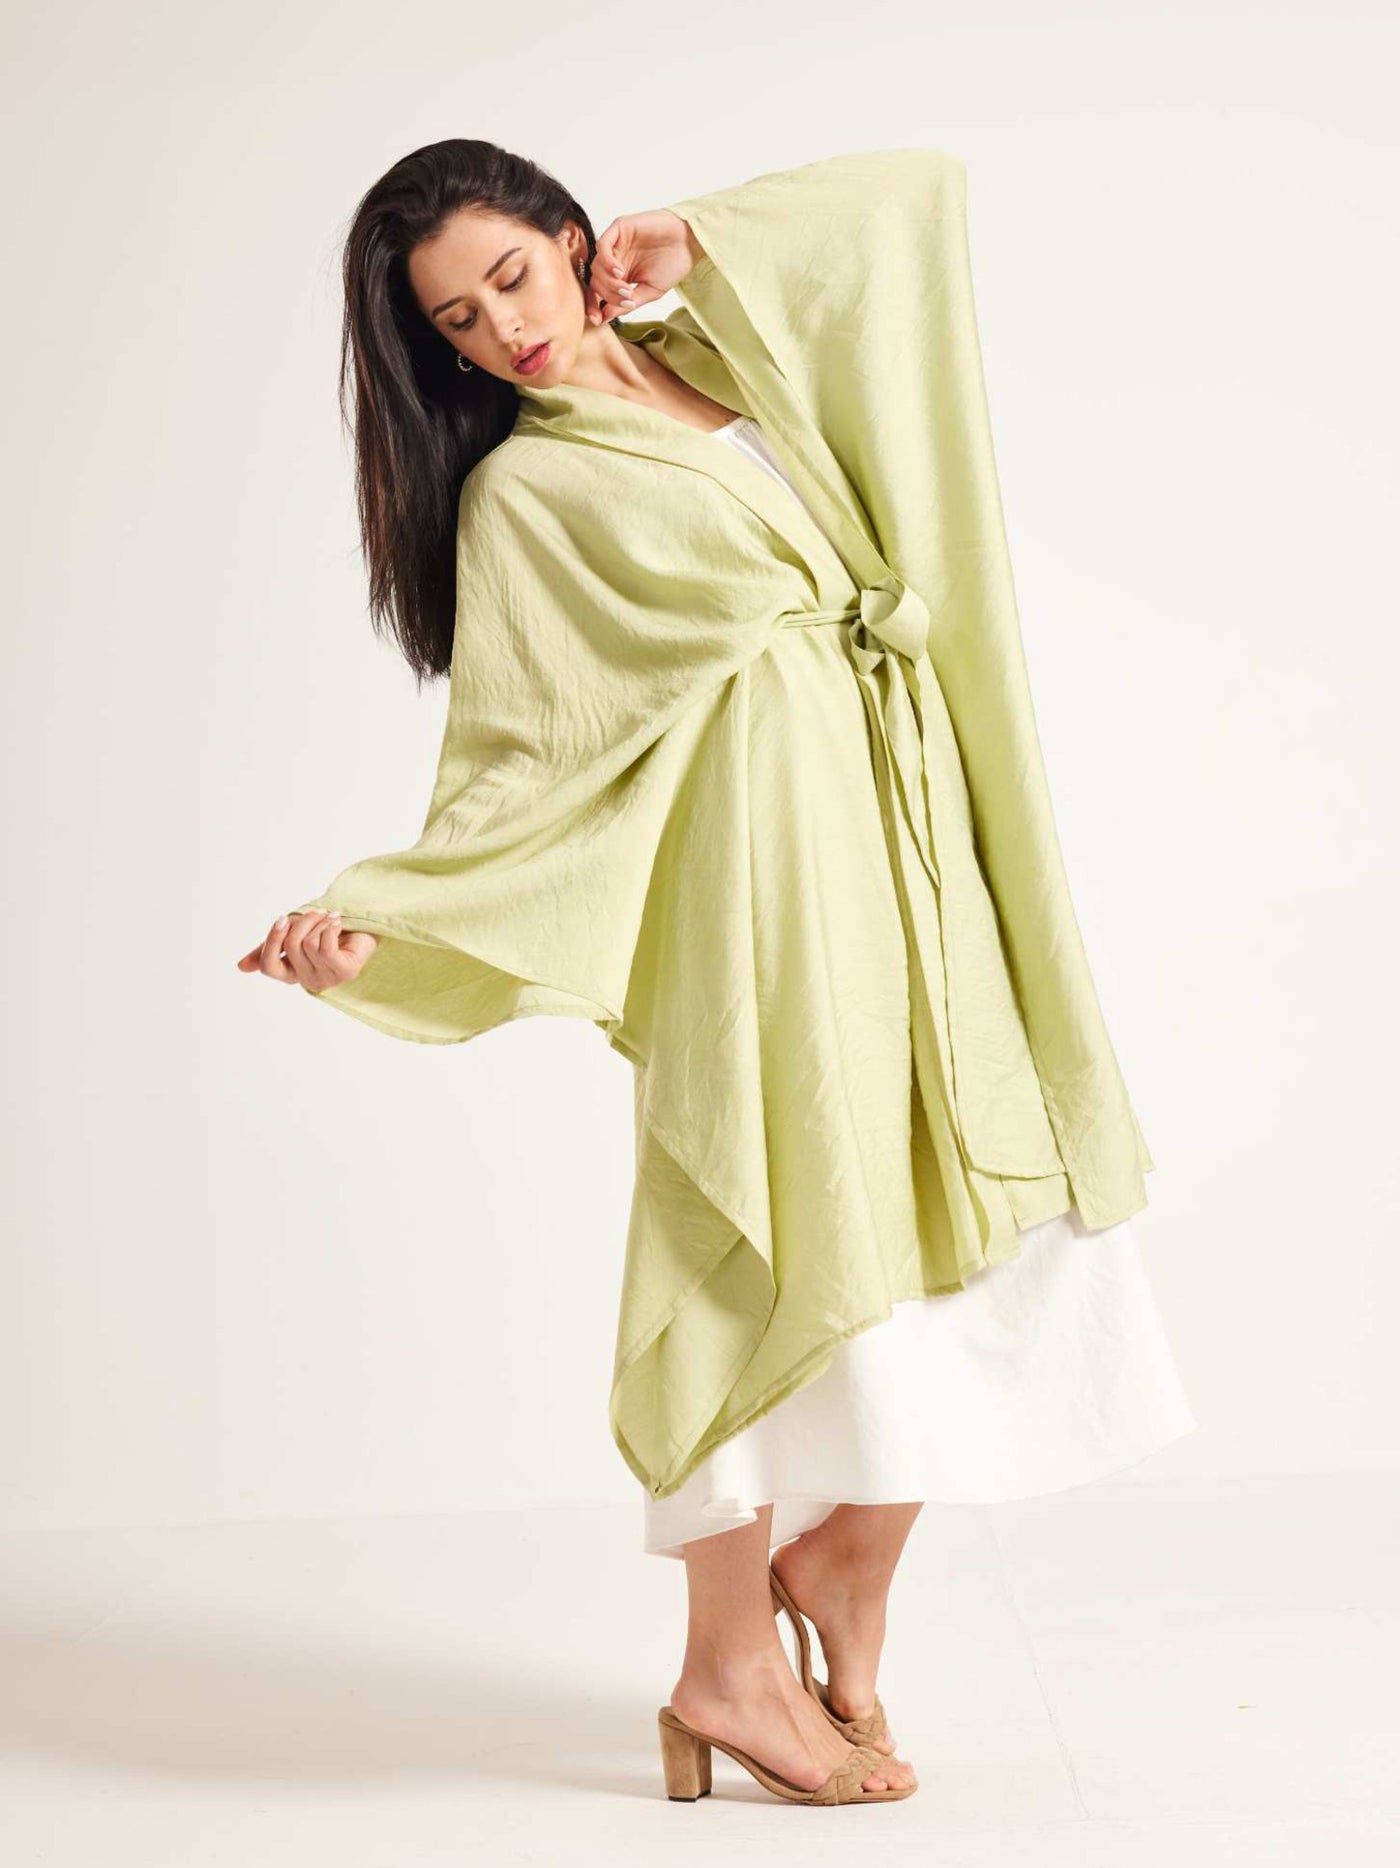 Kimono - Sheer